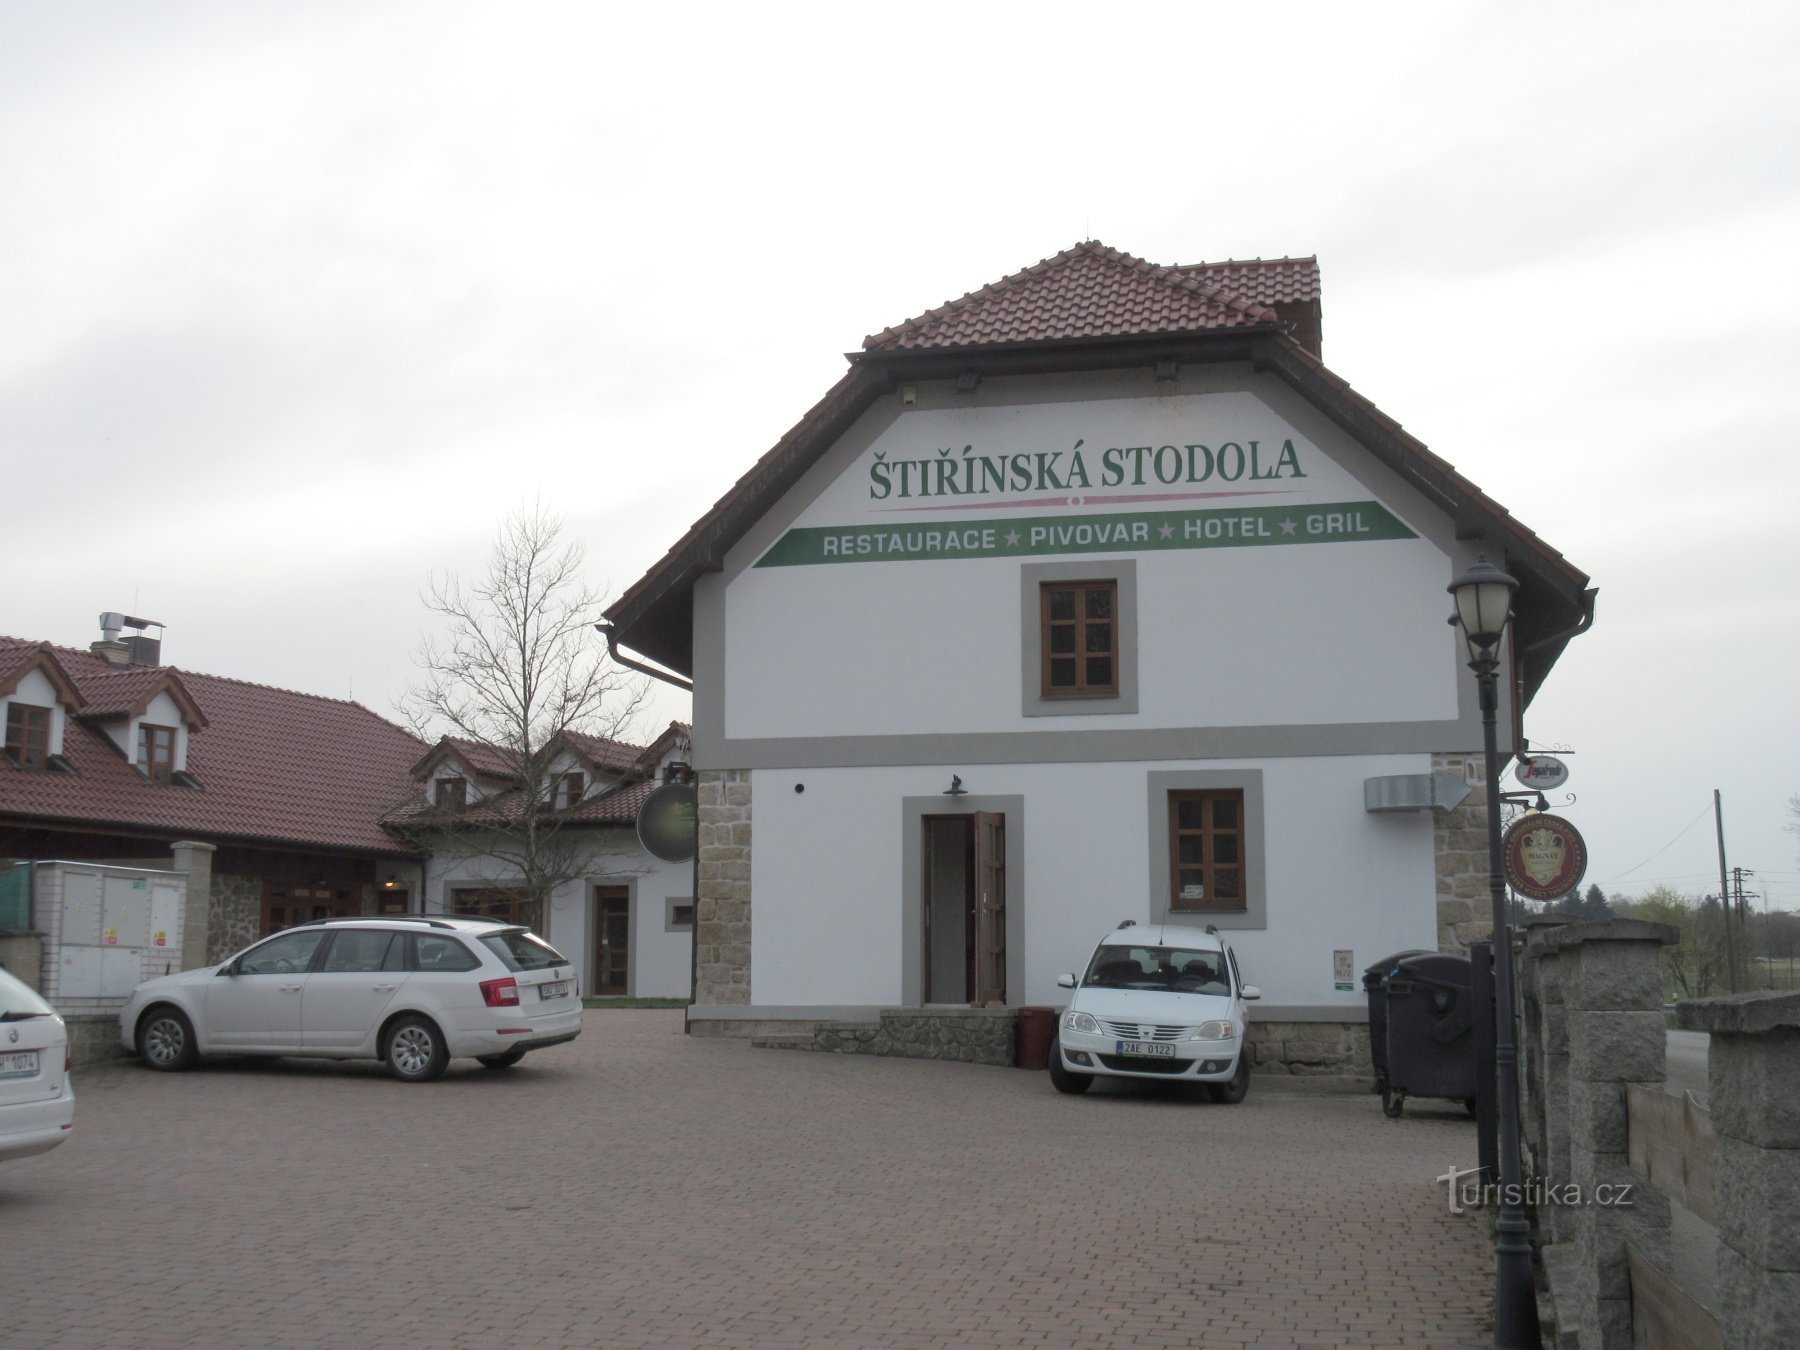 Štiřín - lâu đài, nhà máy bia